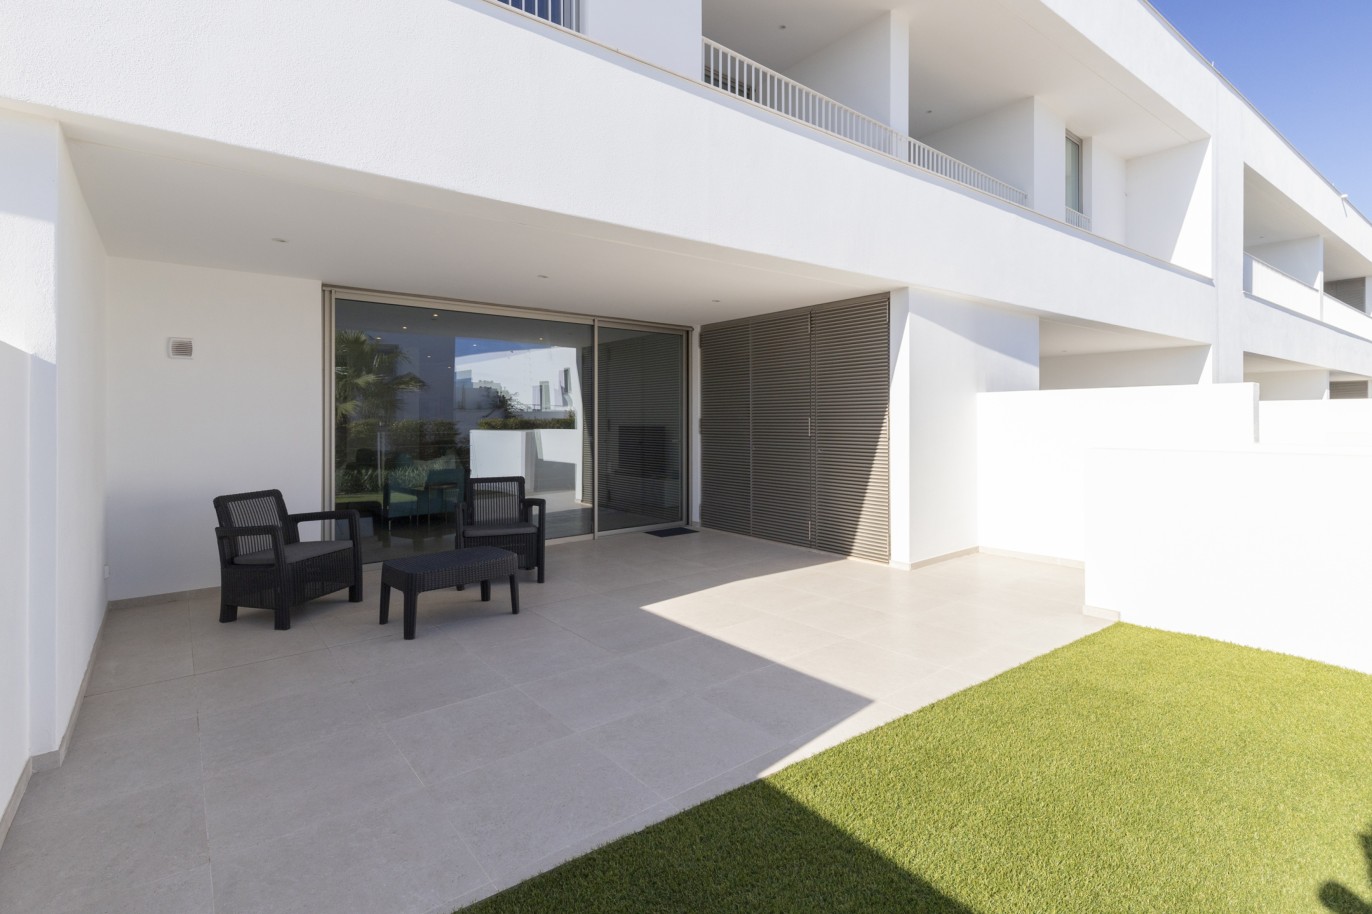 3 bedroom townhouse in private condominium, for sale, in Lagos, Algarve_217639